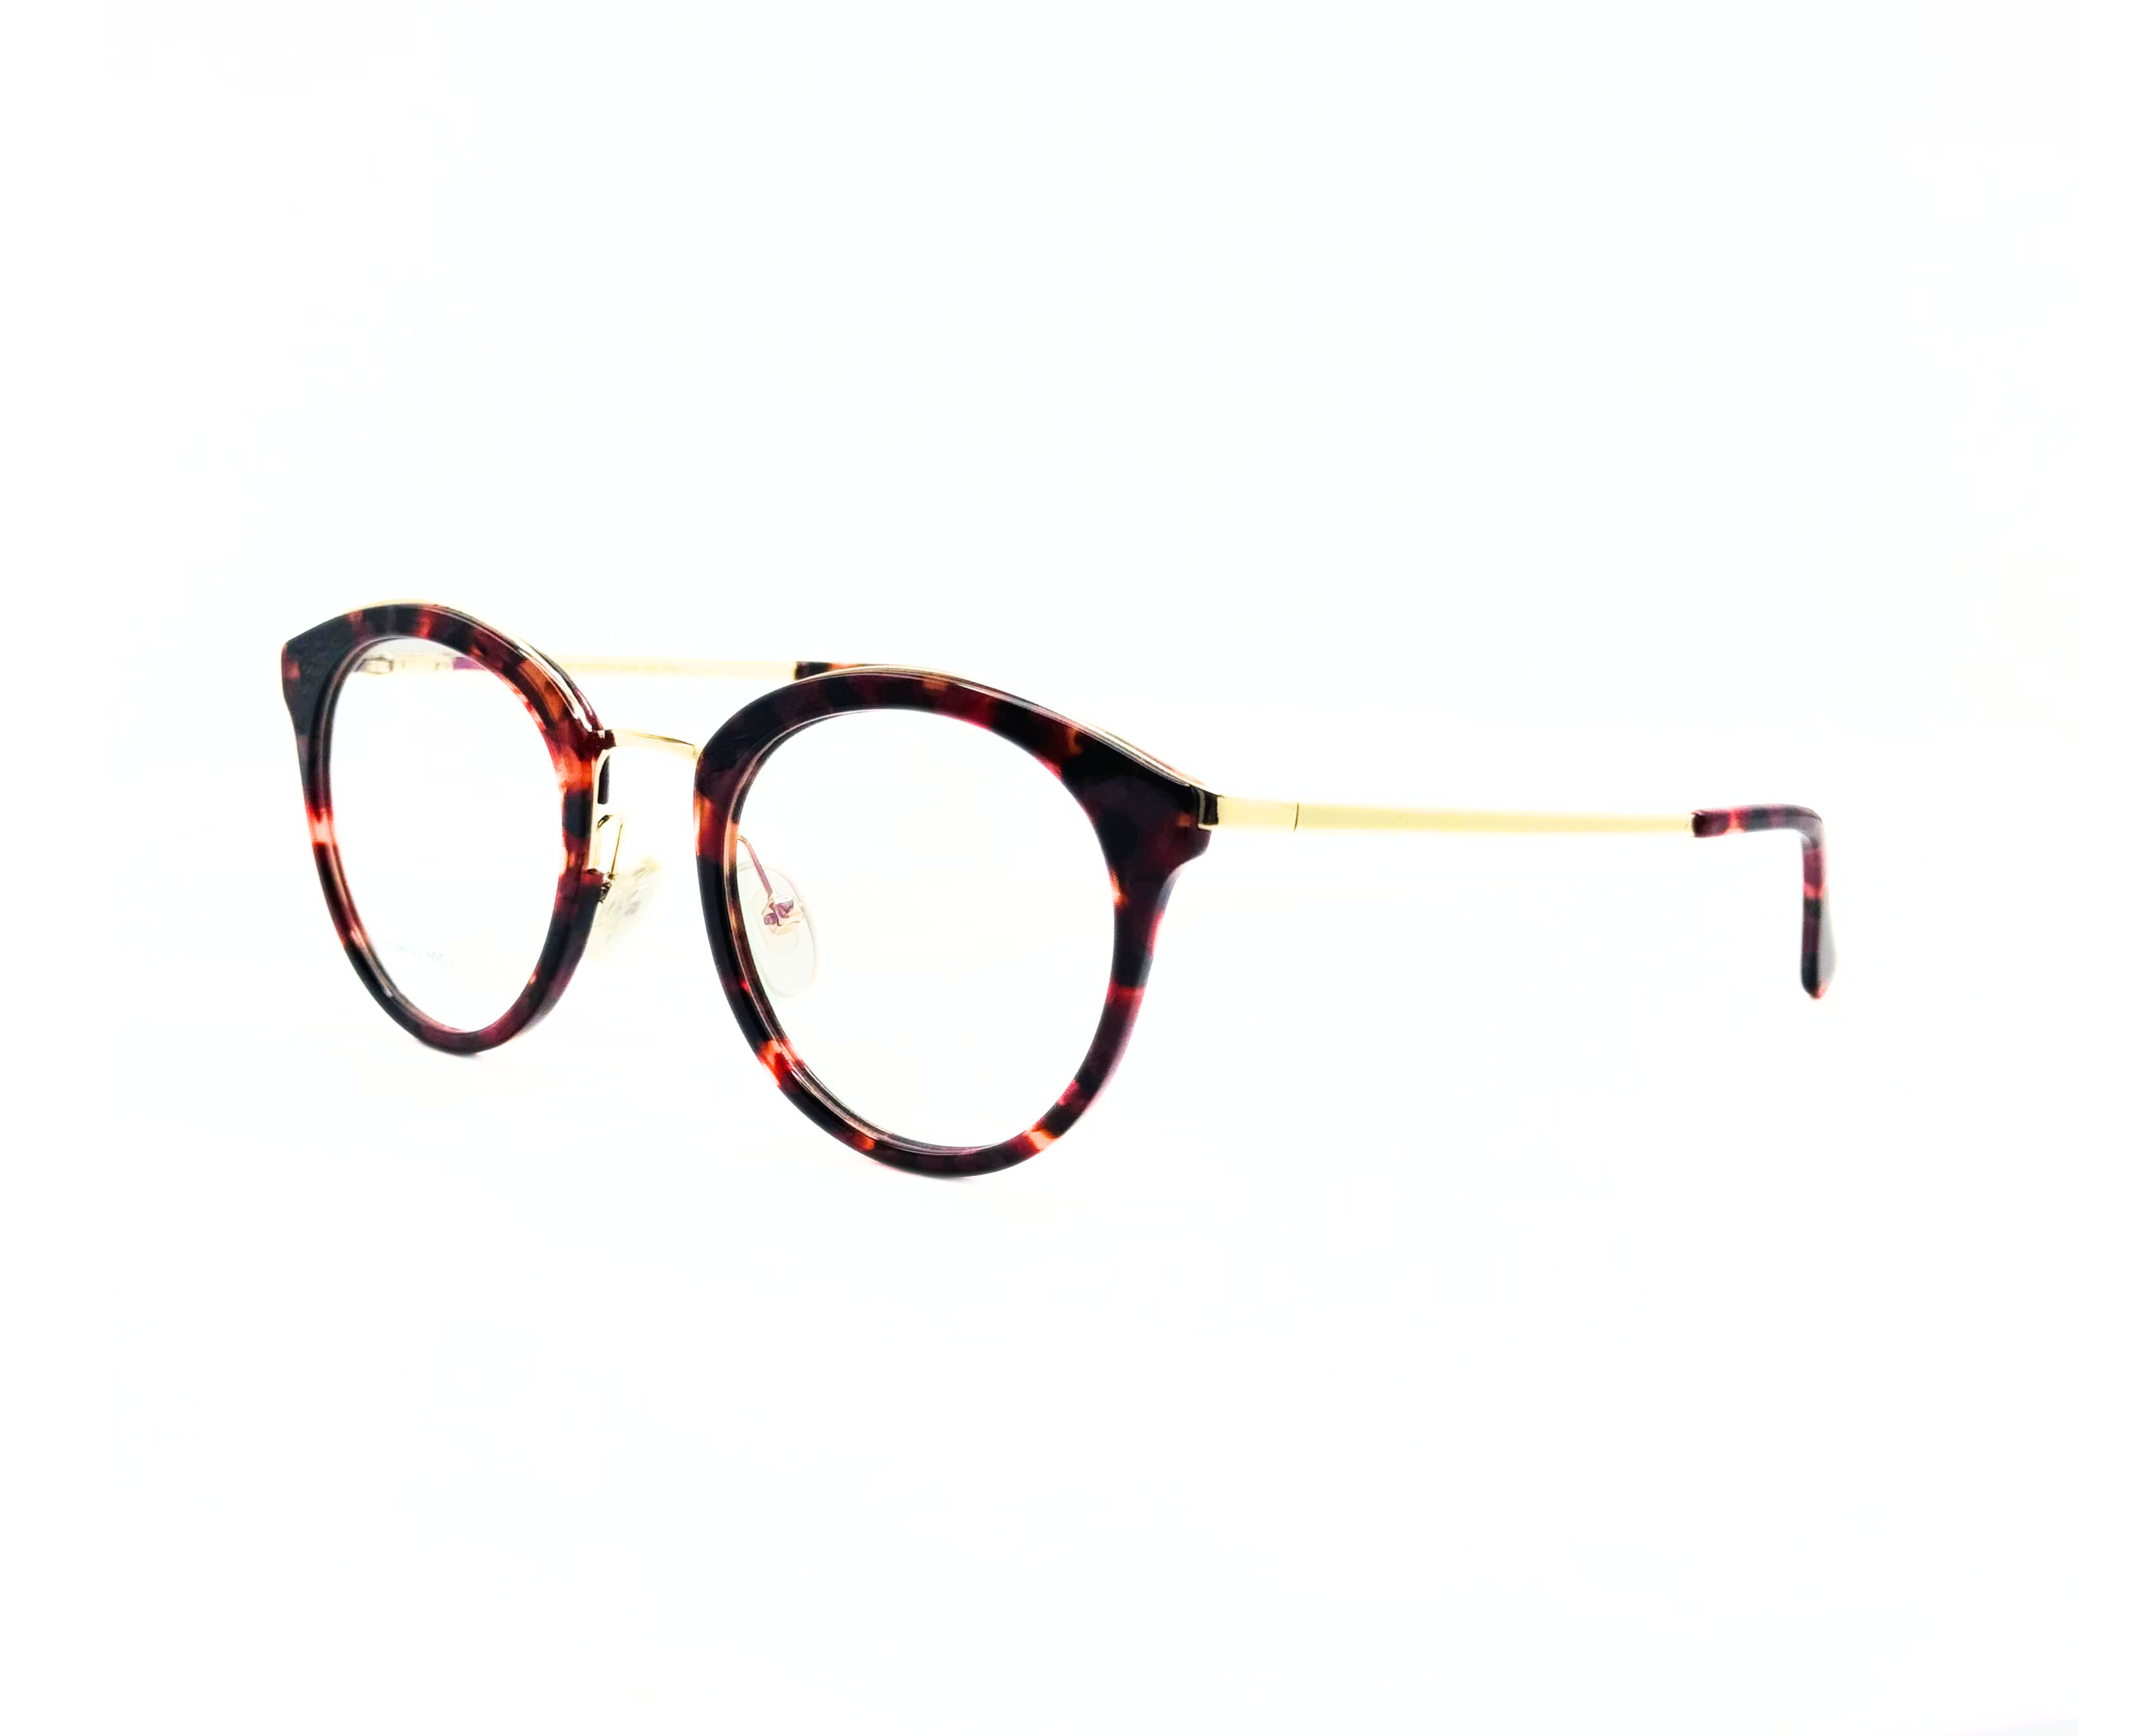 NS Deluxe - 66027 - Tortoise - Eyeglasses